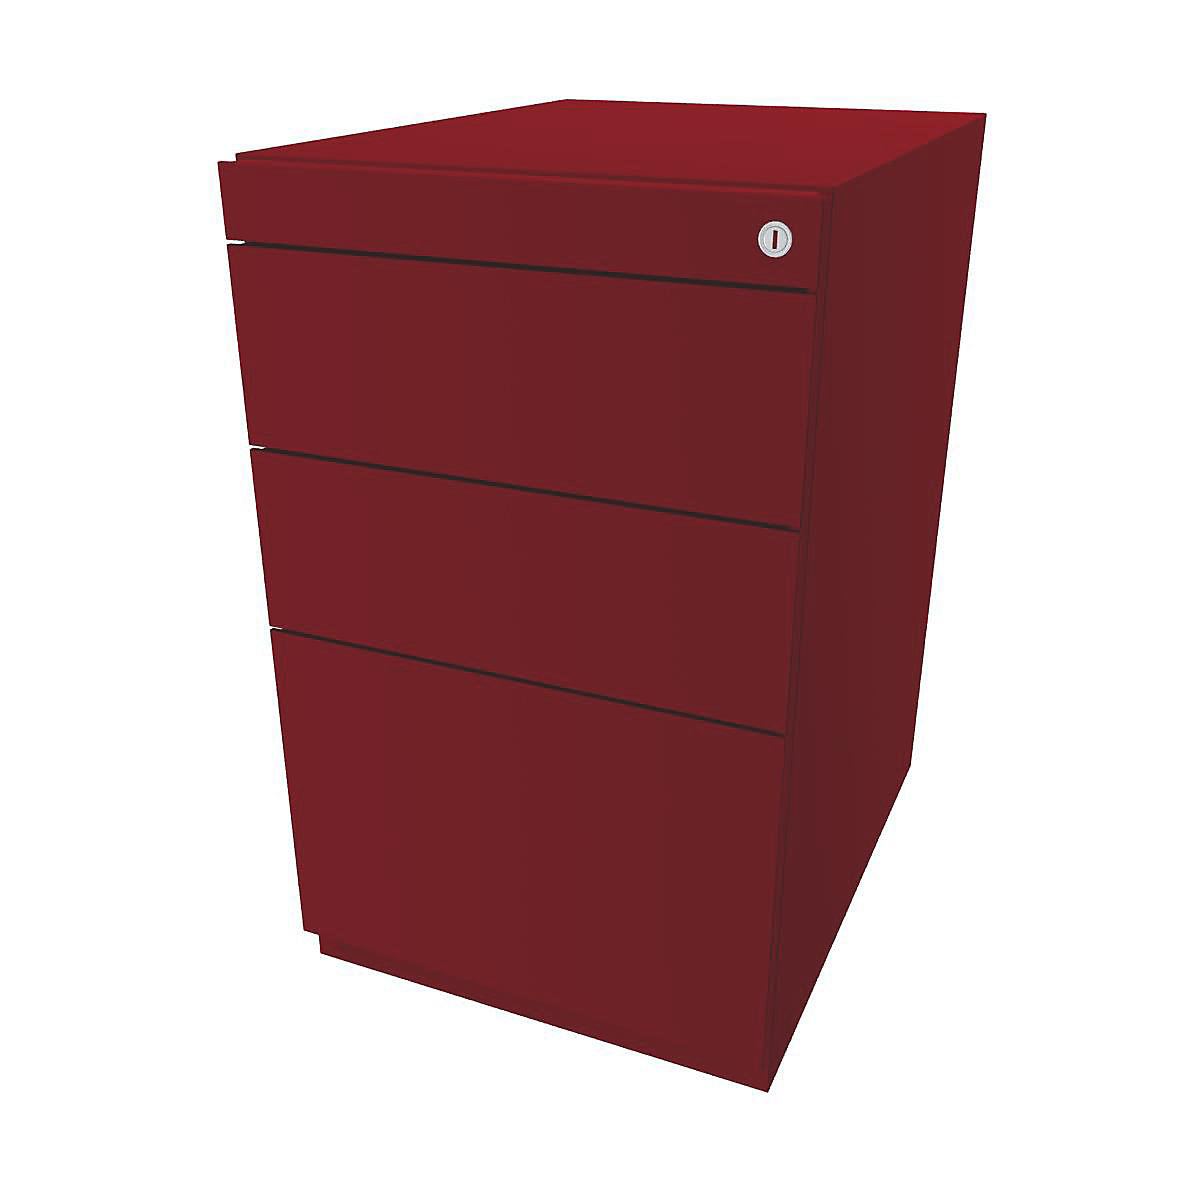 Caisson fixe Note™, avec 2 tiroirs universels, 1 tiroir pour dossiers suspendus – BISLEY, sans plateau de finition, prof. 565 mm, rouge cardinal-8